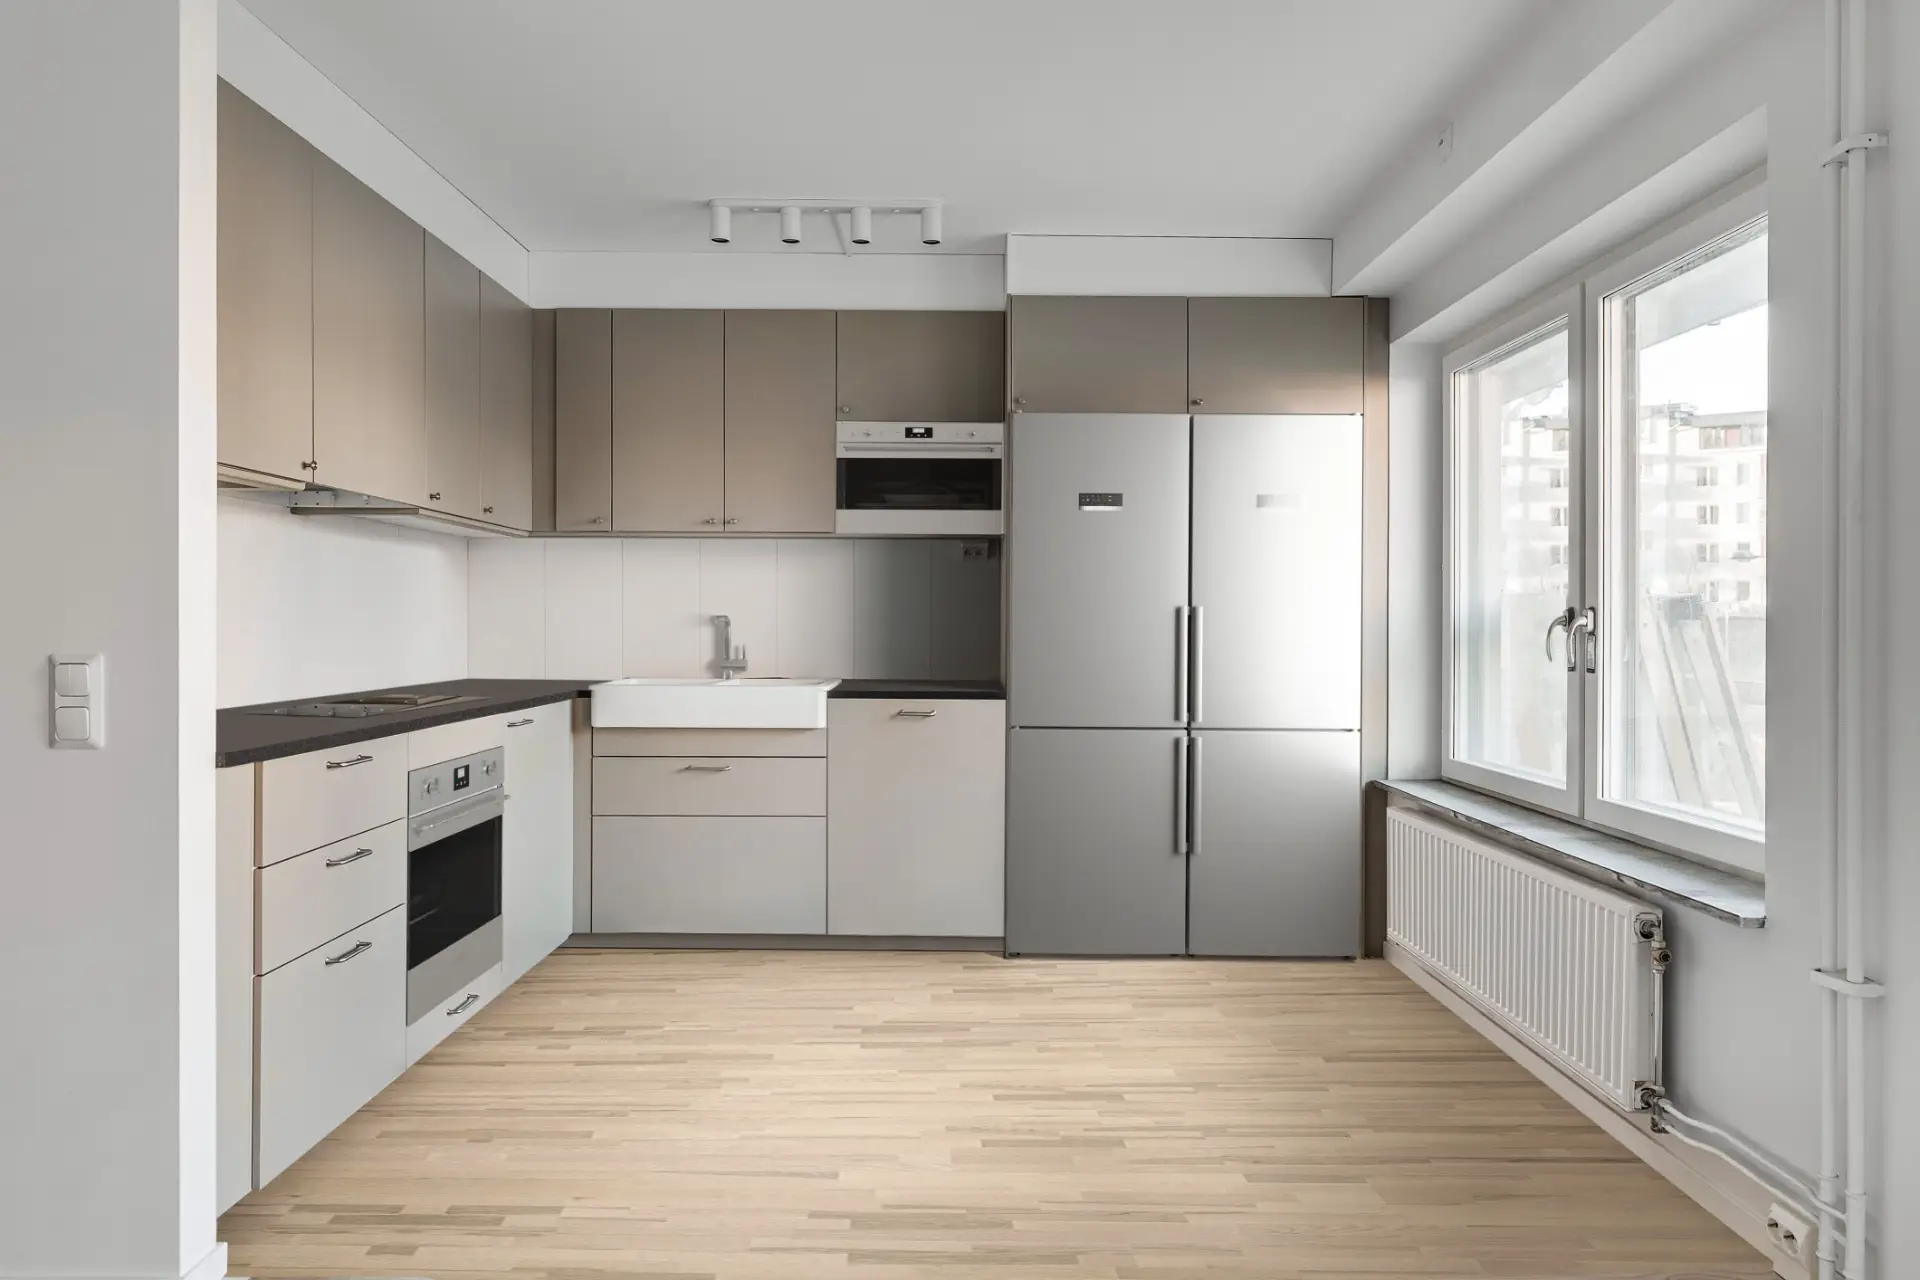 Modernt kök med ljusa trägolv, beige köksluckor och rostfria vitvaror inklusive kylskåp, ugn och integrerad diskmaskin. Naturligt ljus fyller rummet genom stora fönster.